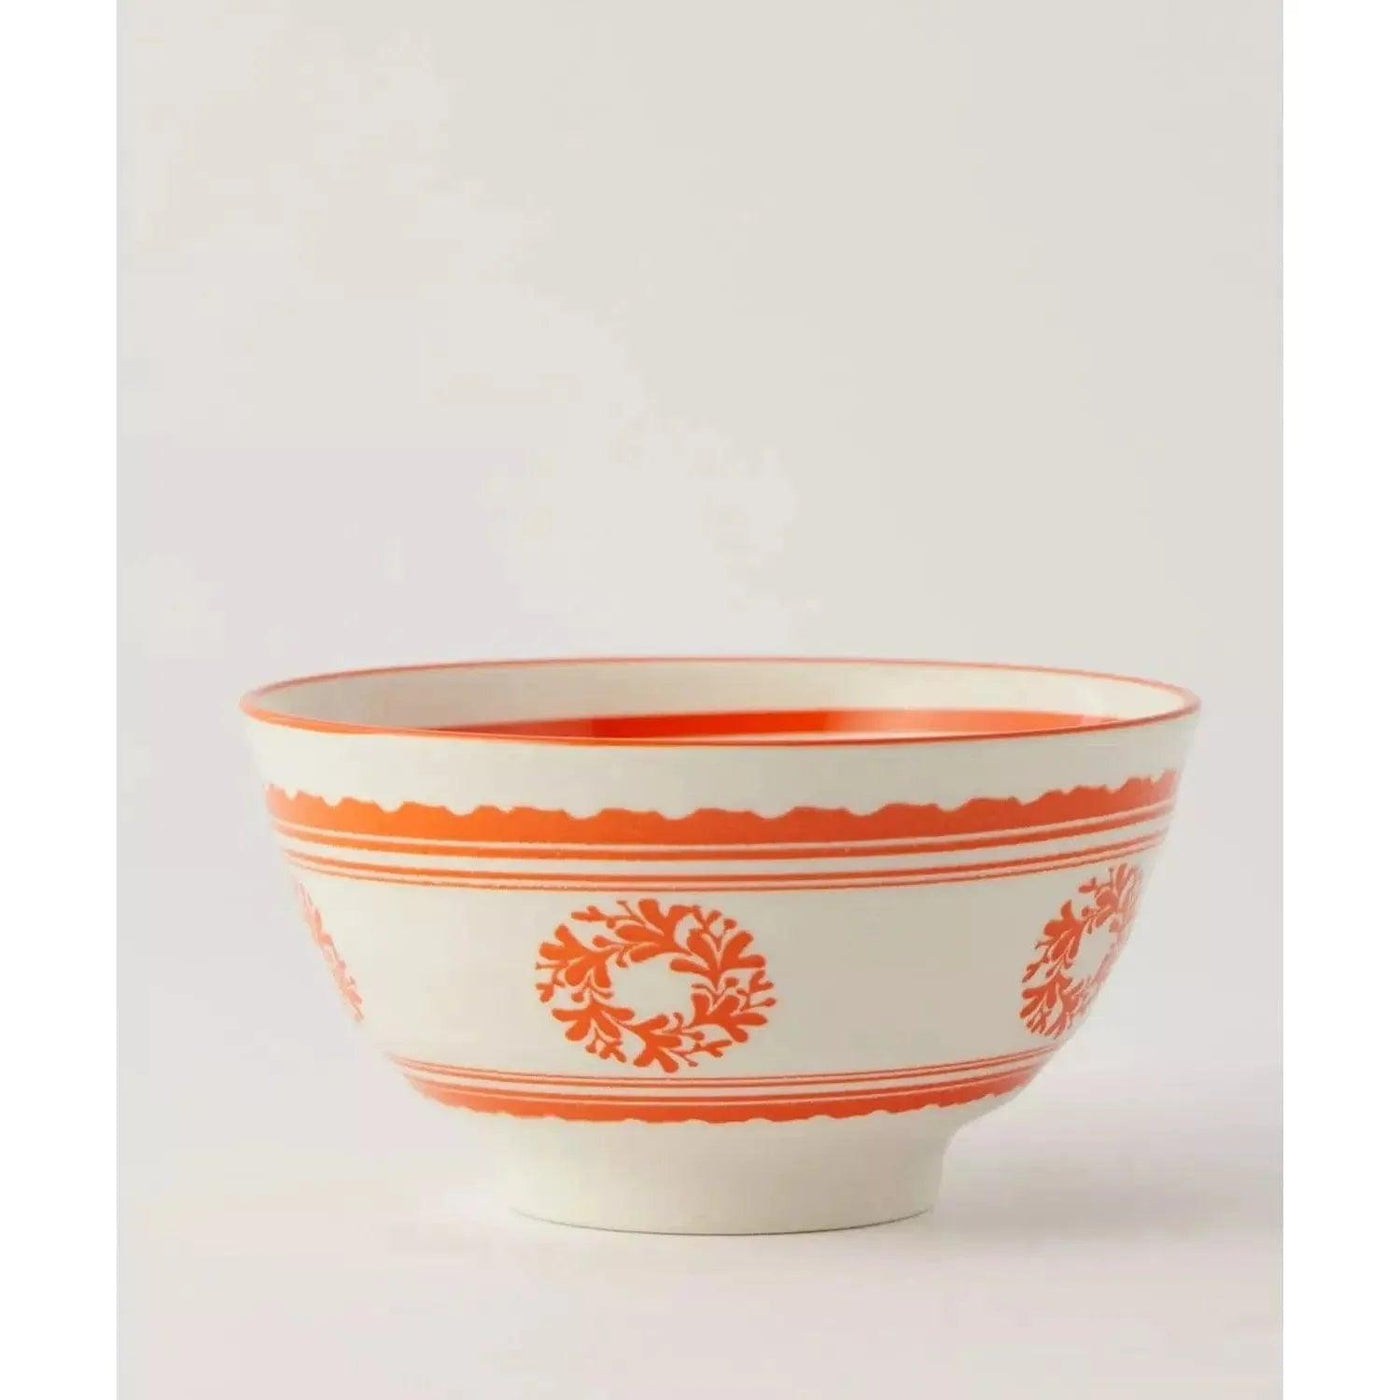 souq Bowl de Ceramica Belvedere